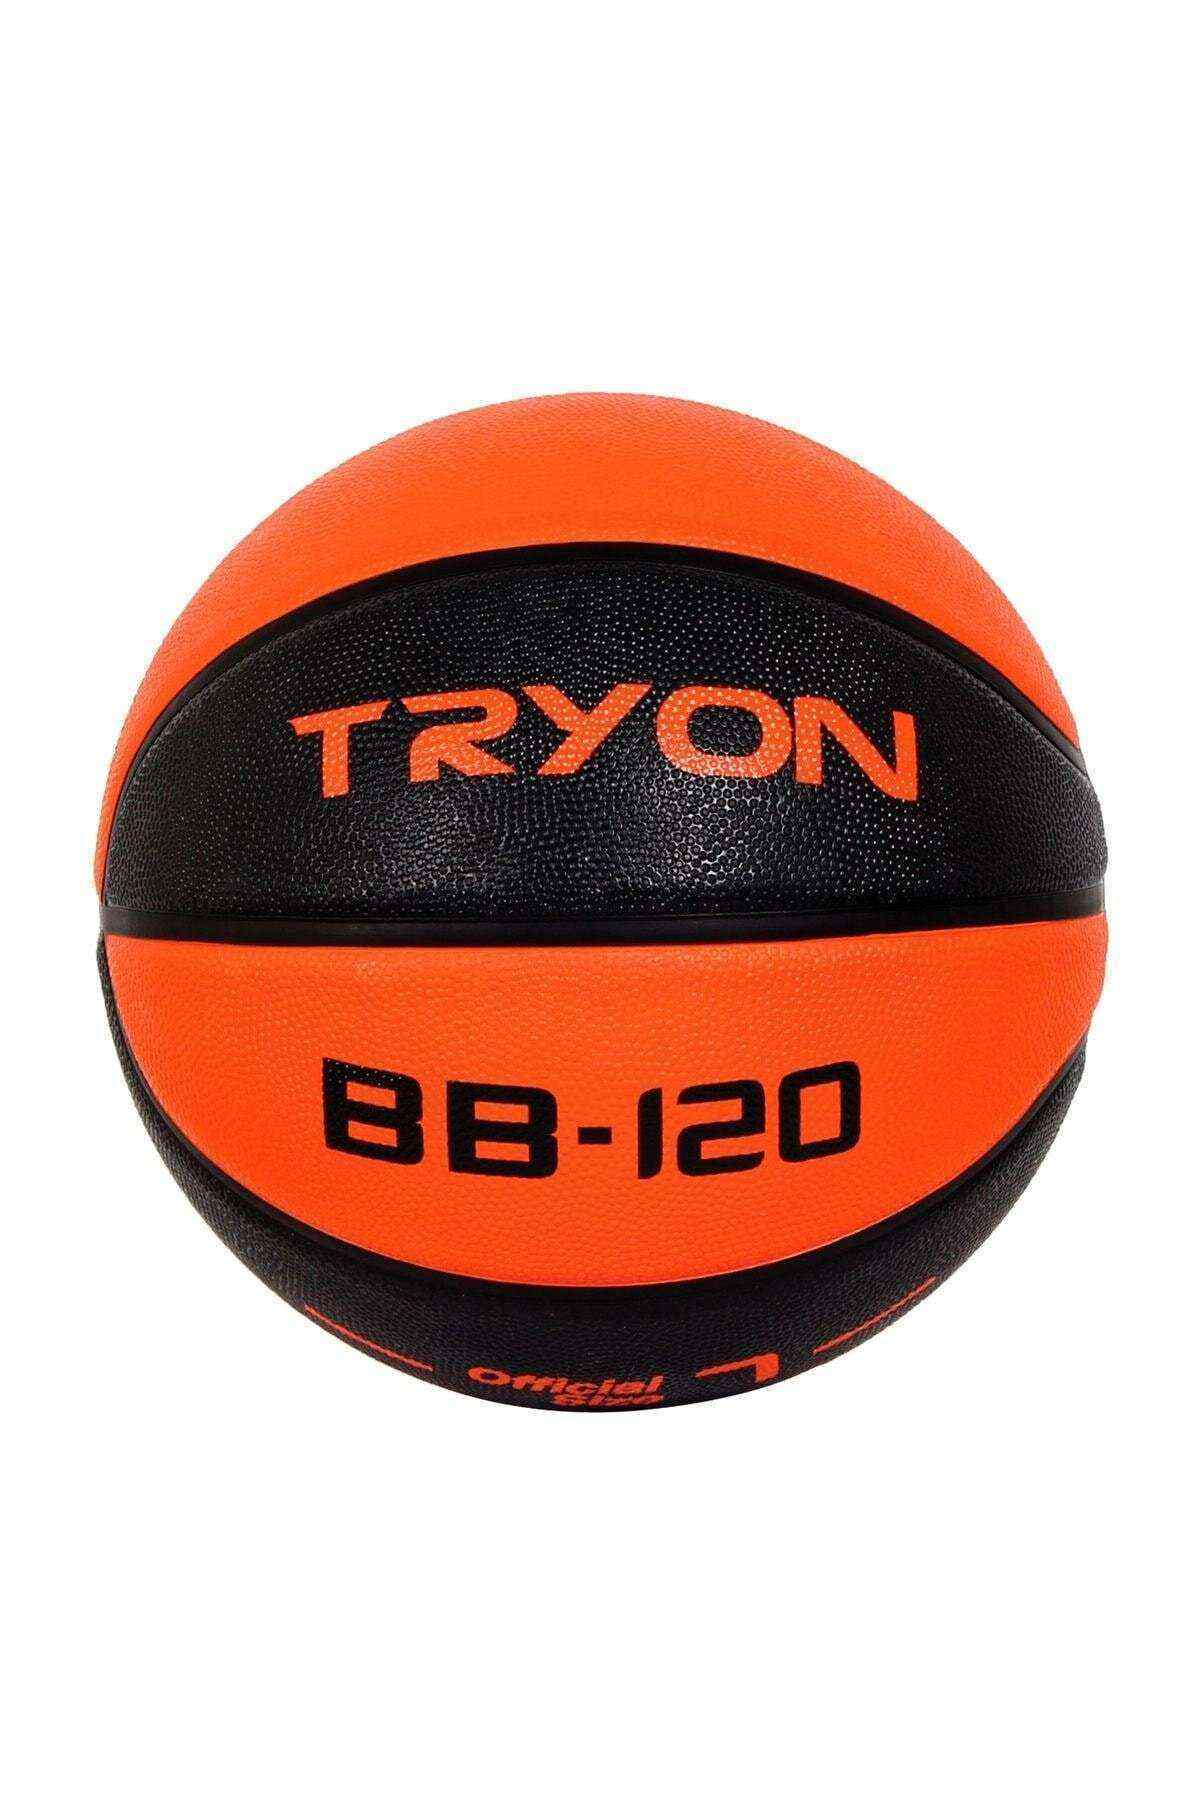 TRYON Basketbol Topu BB-120 No:7 Turunucu-Siyah